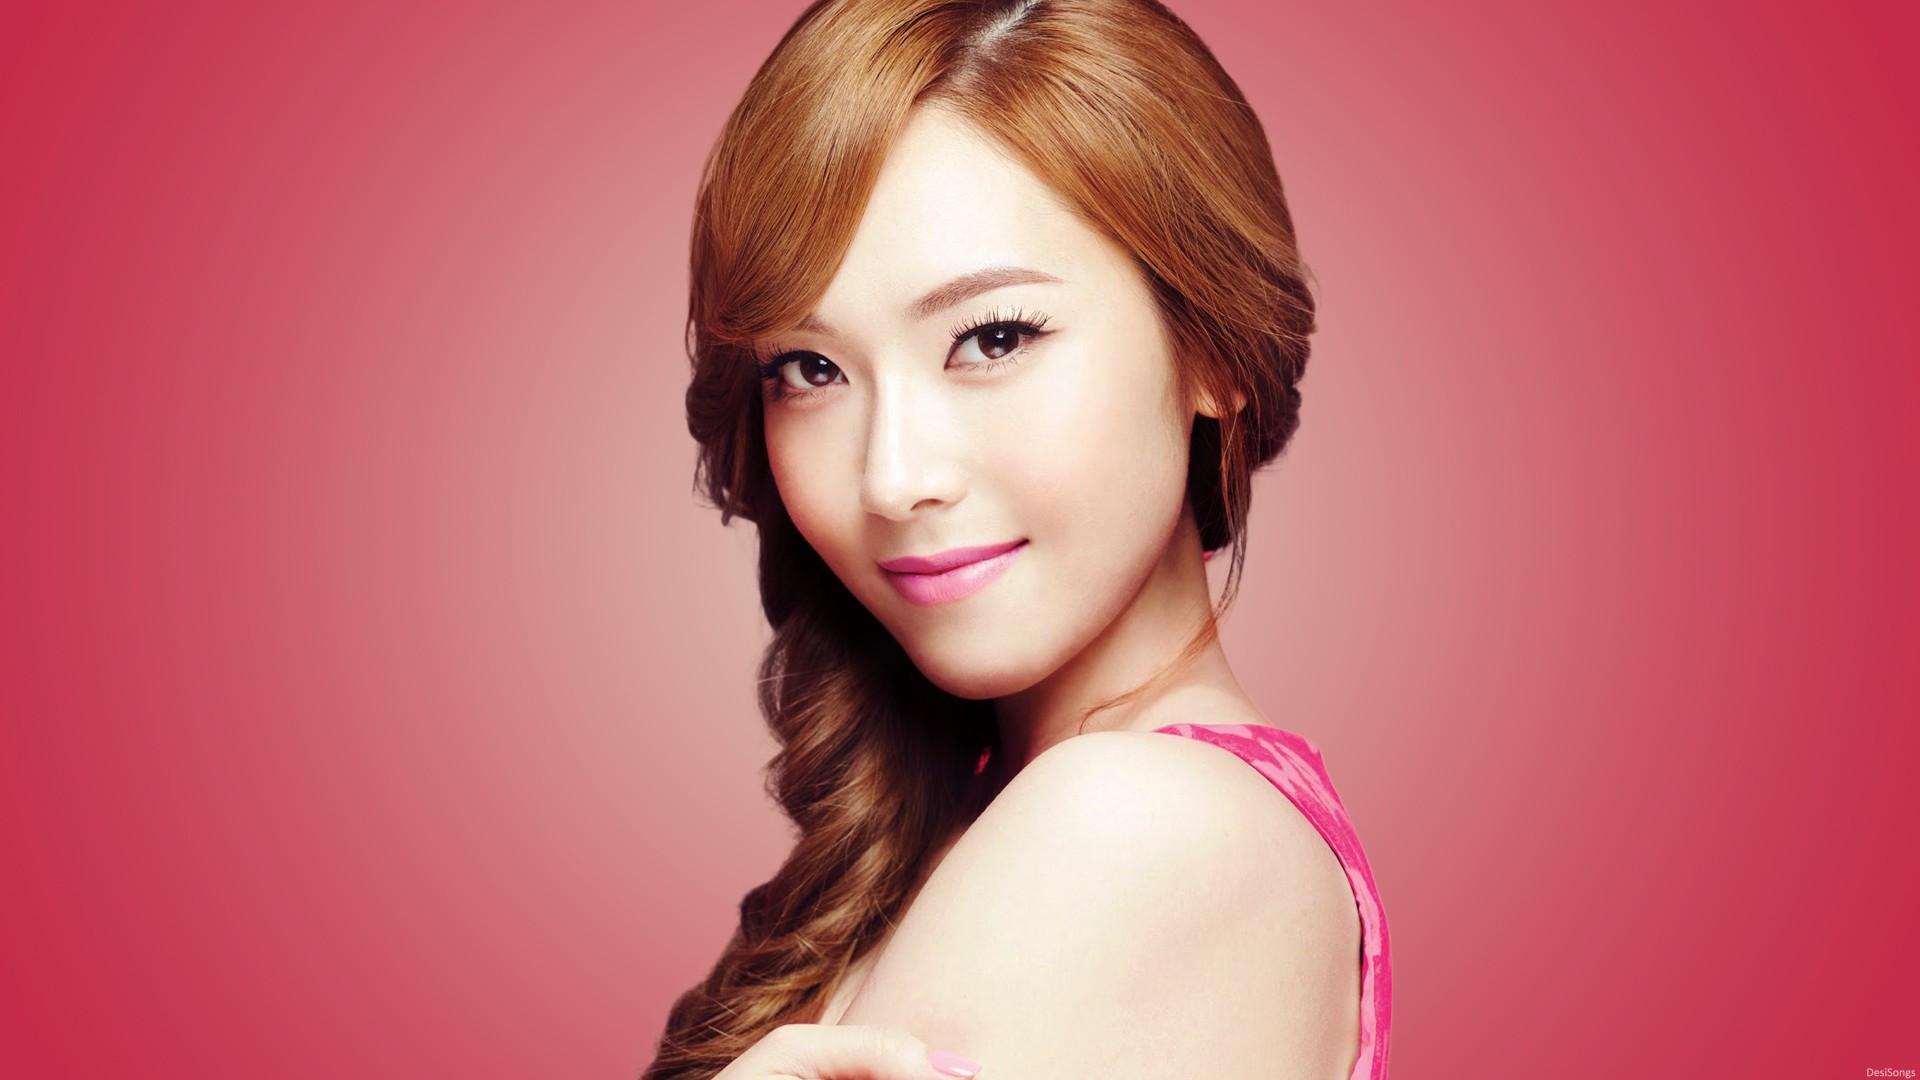 SNSD Girls Generation Asian Model Musician Singer Jessica Jung Jessica Jung Korean Women Face Brunet 1920x1080